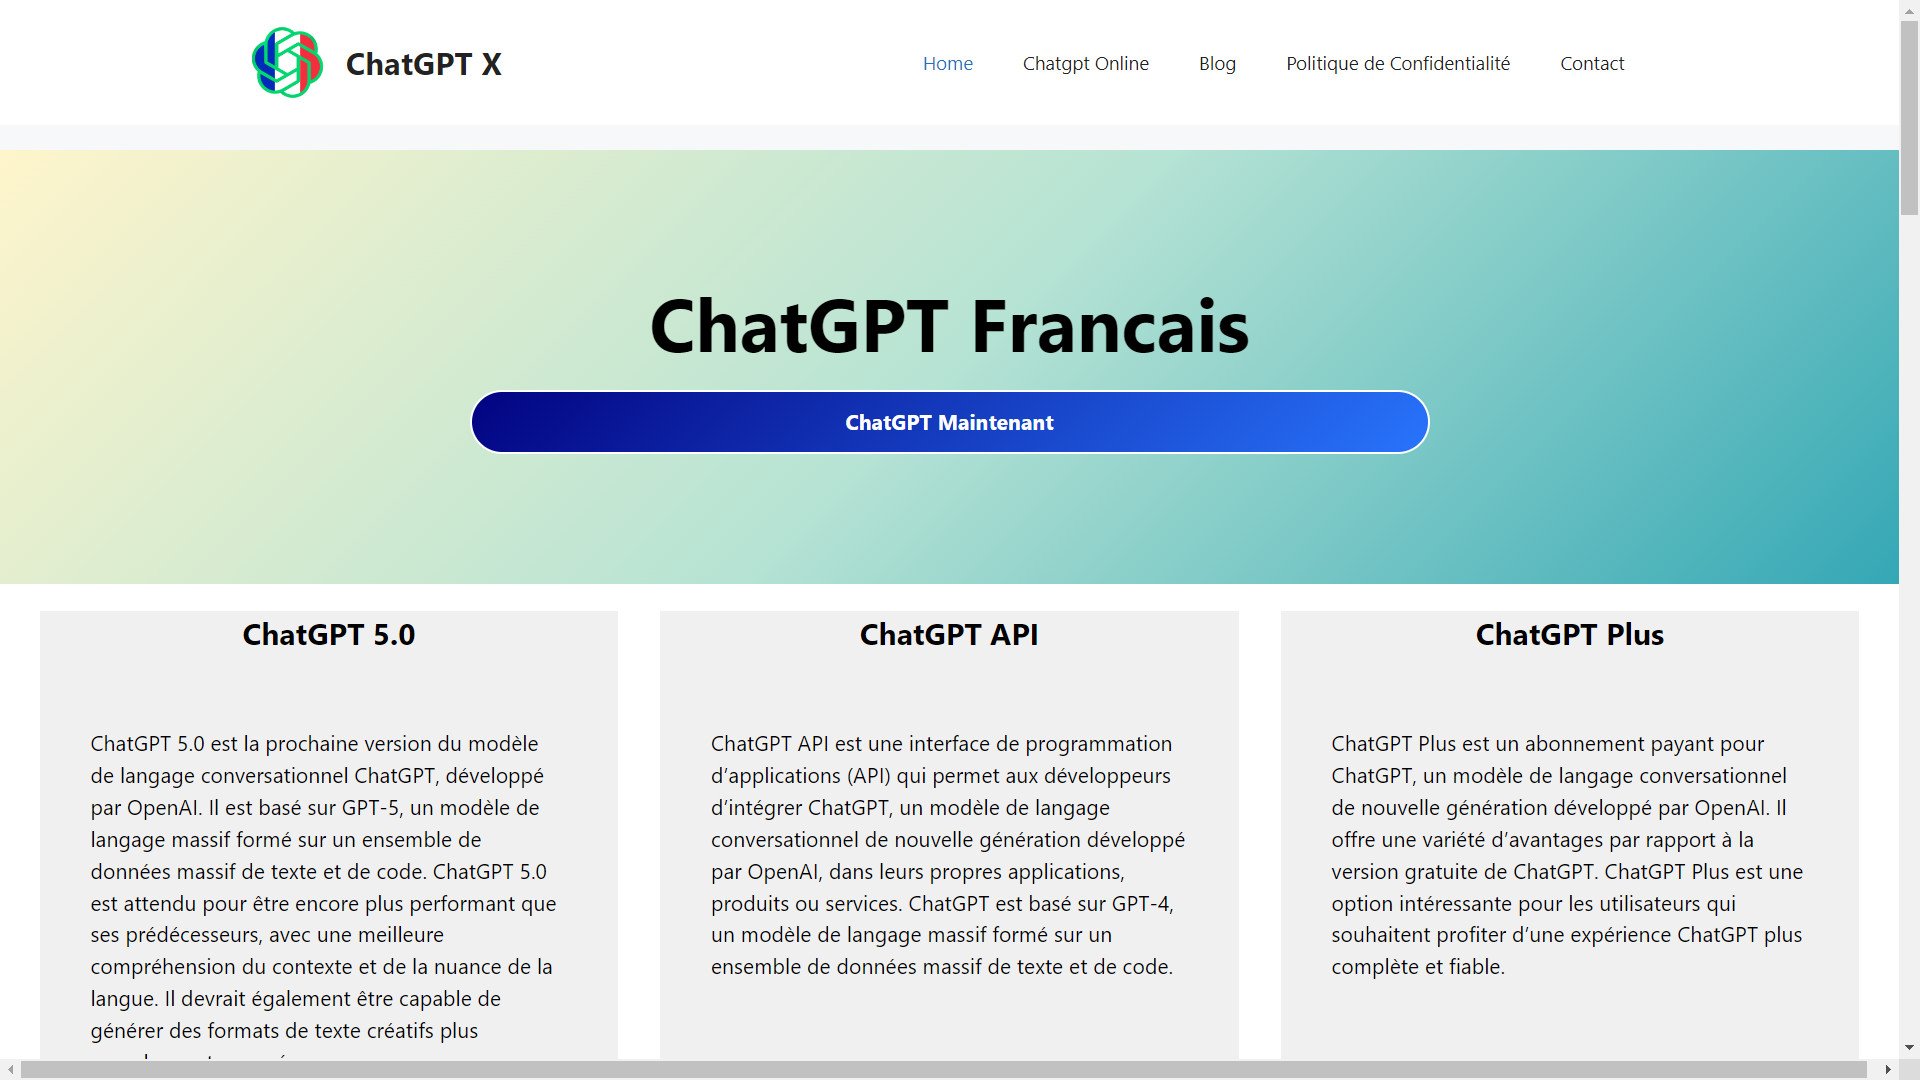 L'avènement de ChatGPT en Français : Une Révolution Conversationnelle